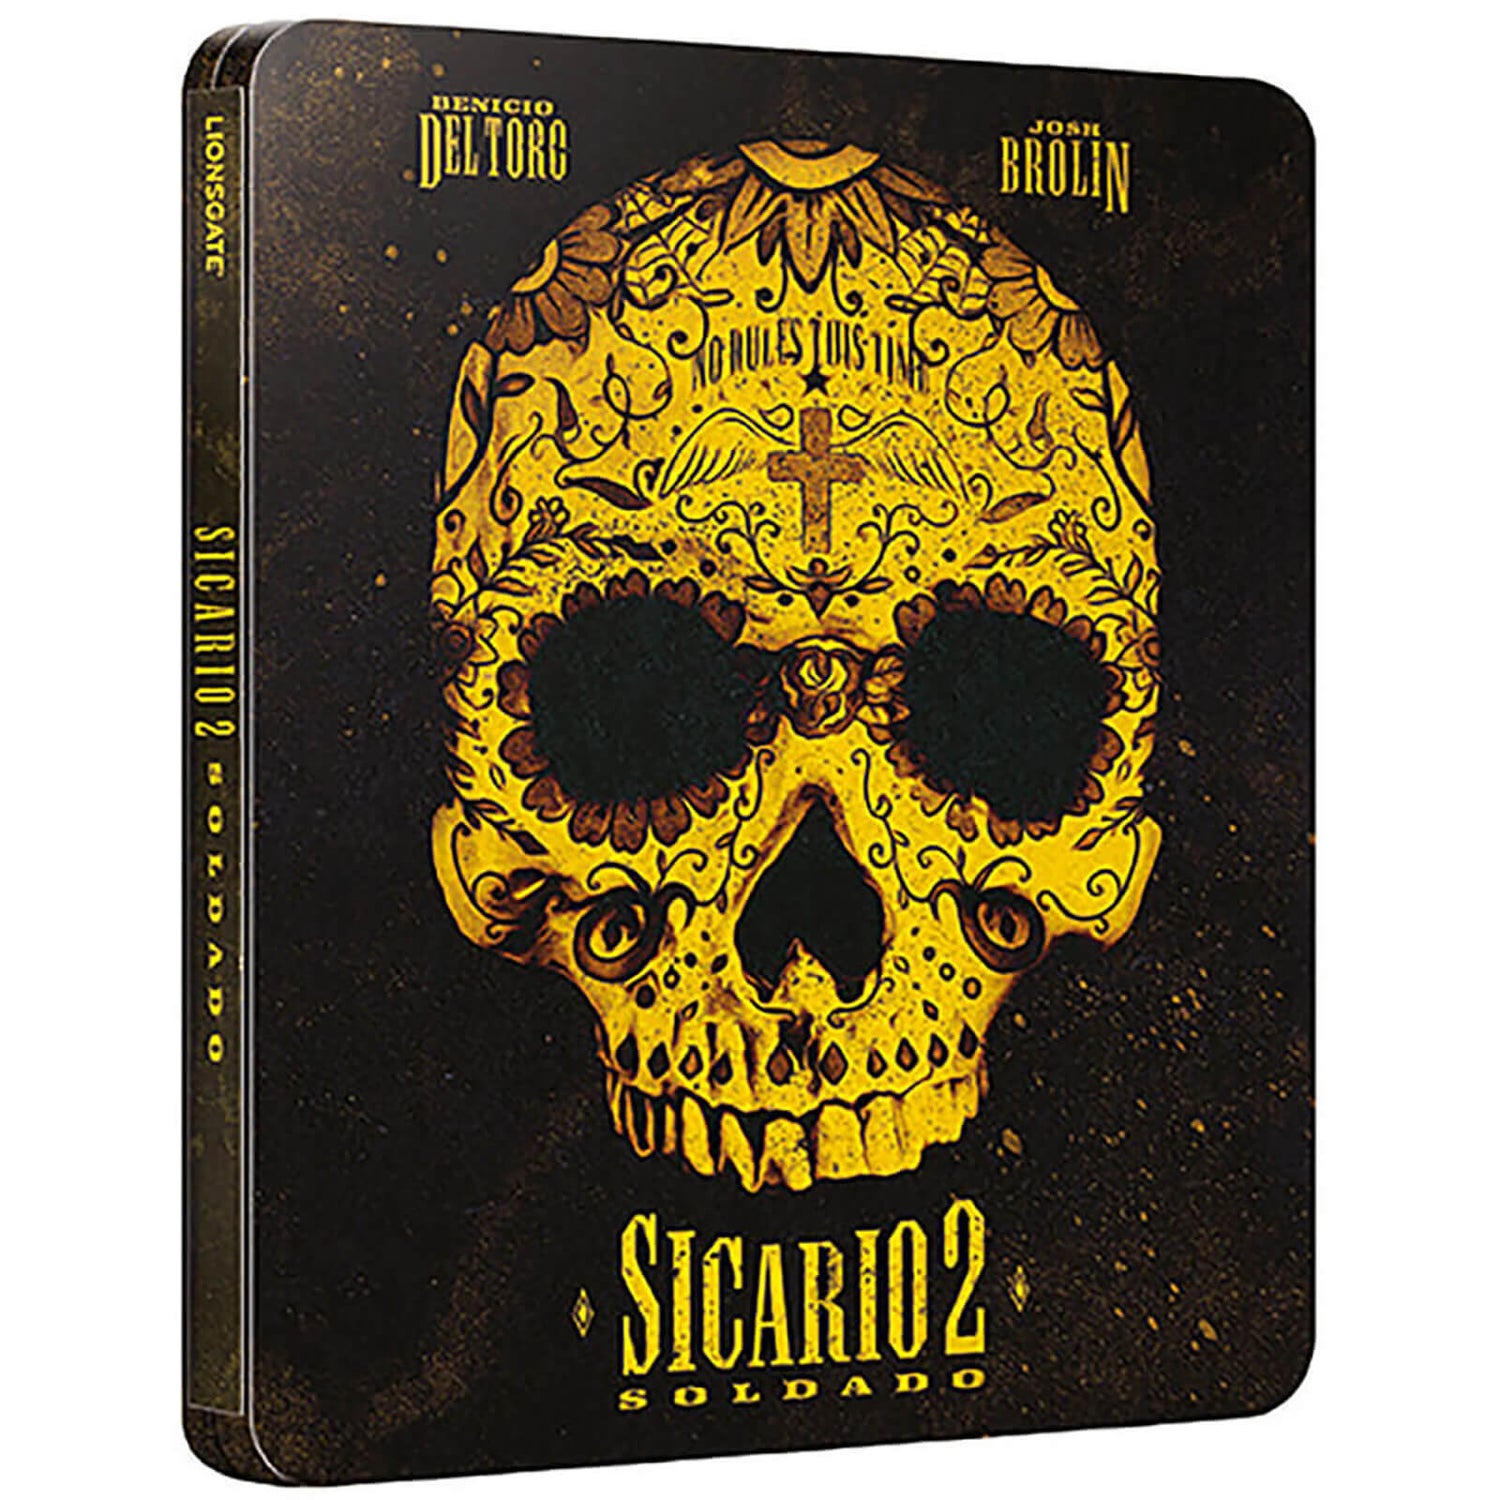 Sicario 2: Soldado 4K Ultra HD (Includes Blu-Ray Version) - Zavvi UK Exclusive Steelbook